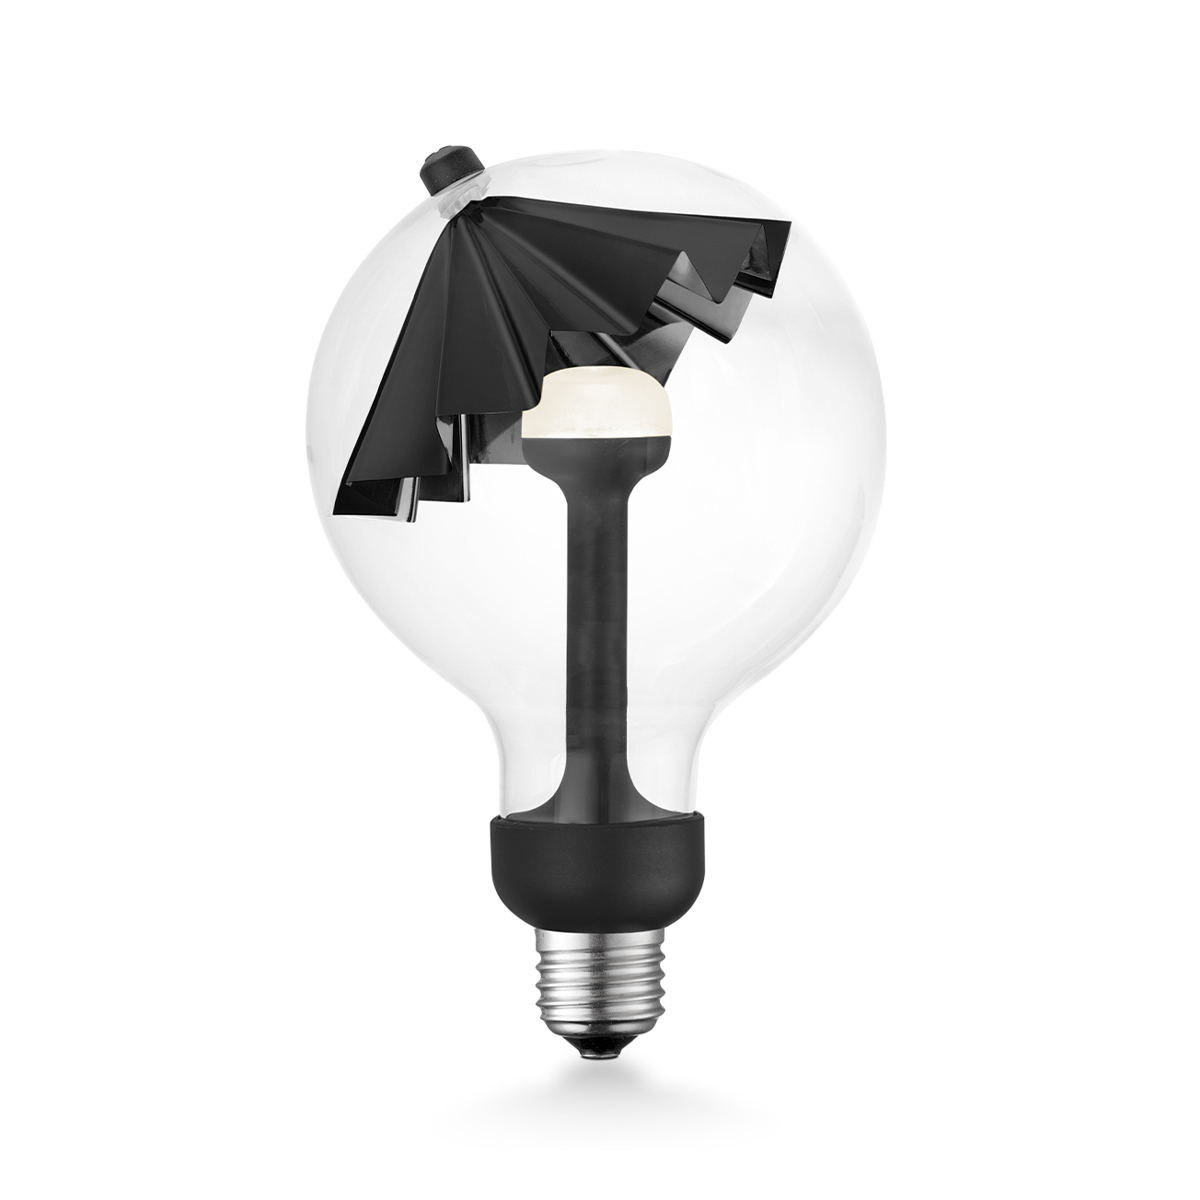 Tangla lighting - 0670-07-D - LED Light Bulb Move me - G120 5.5W Umbrella black - dimmable - E27 / E26